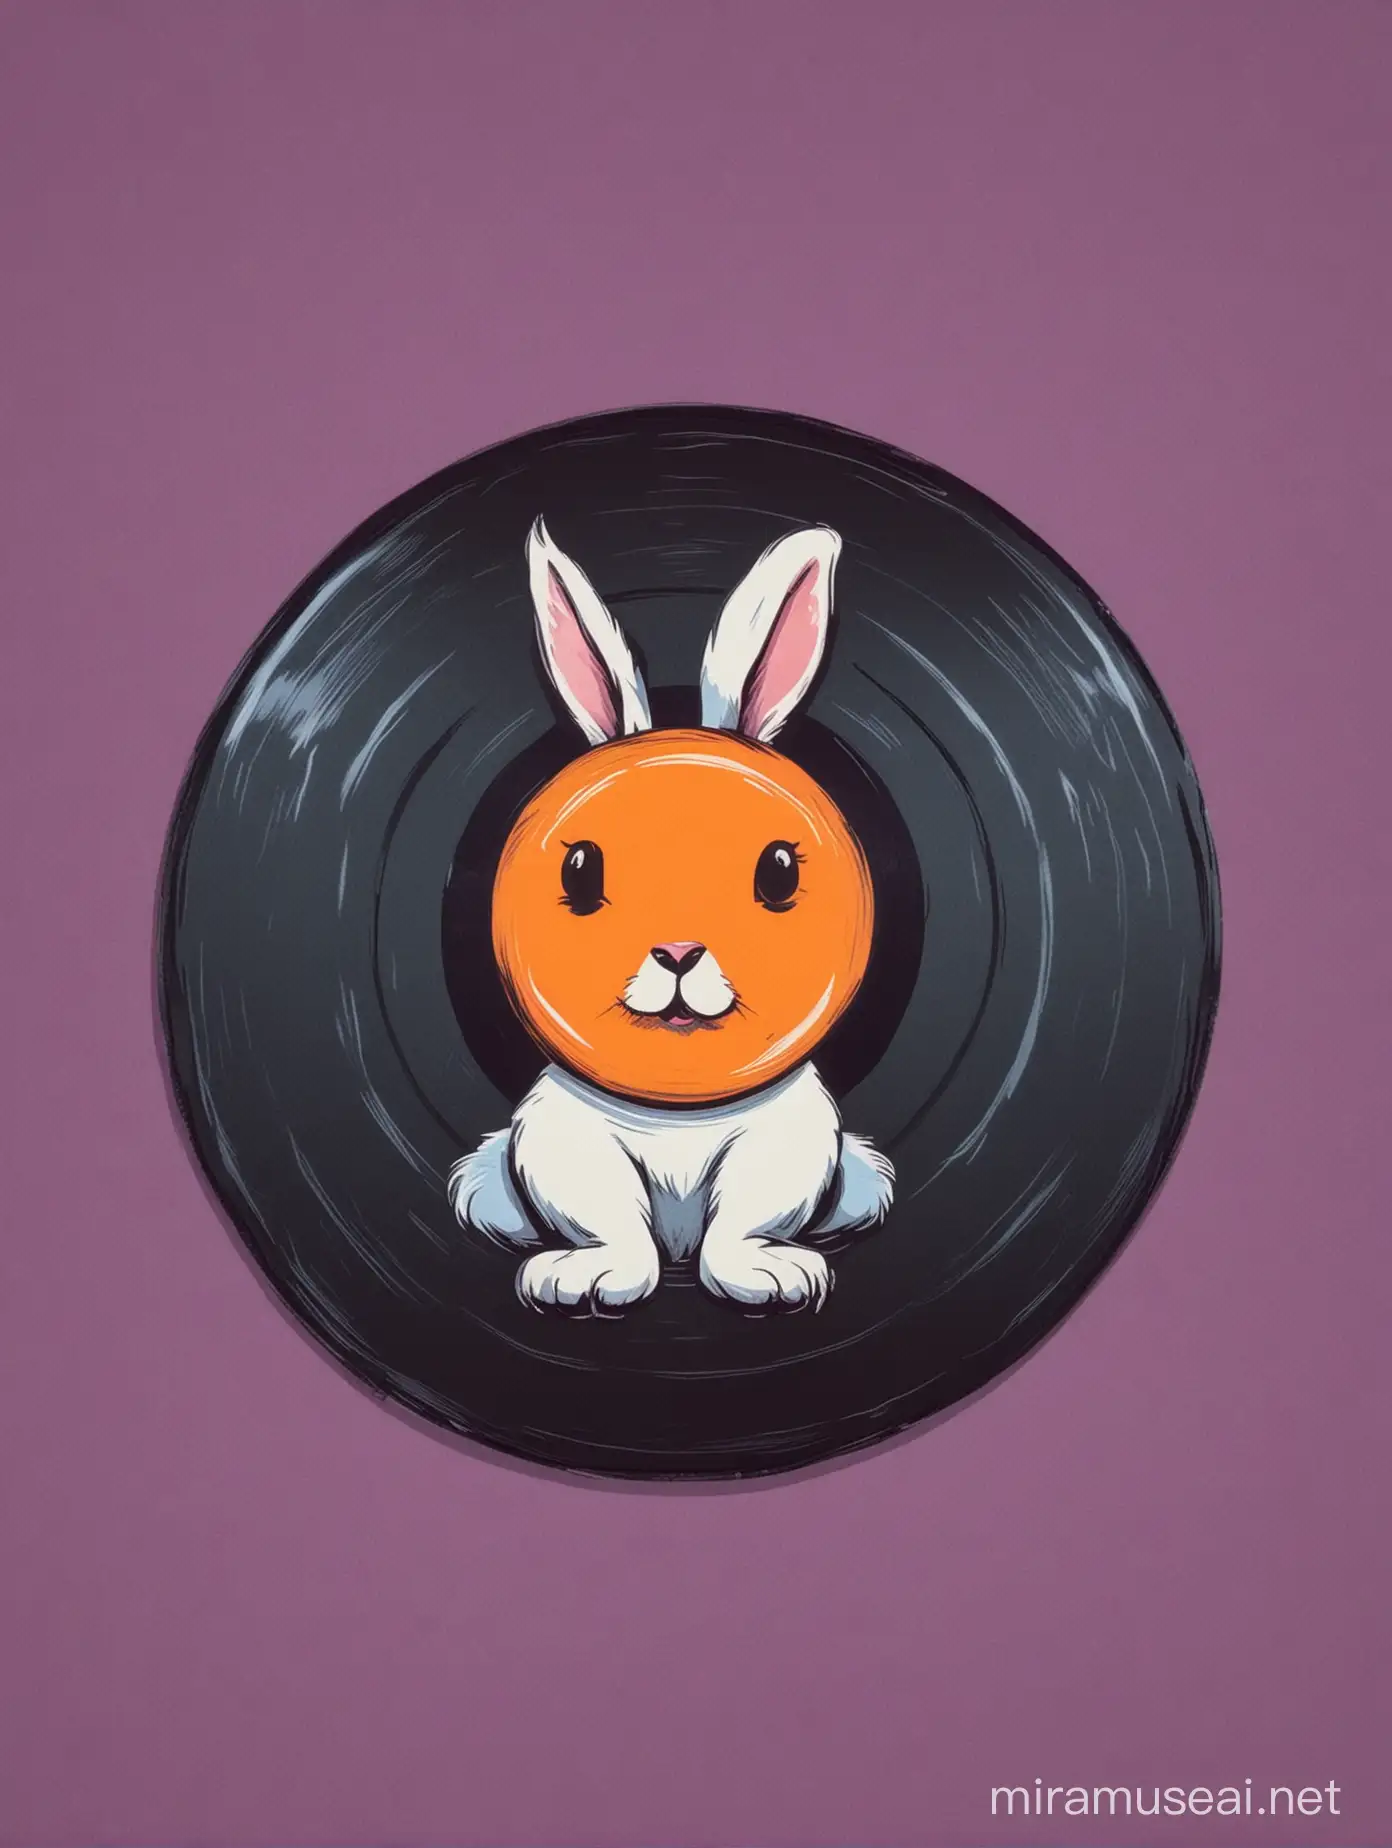 pop art artstyle of vinyl disc and rabbit